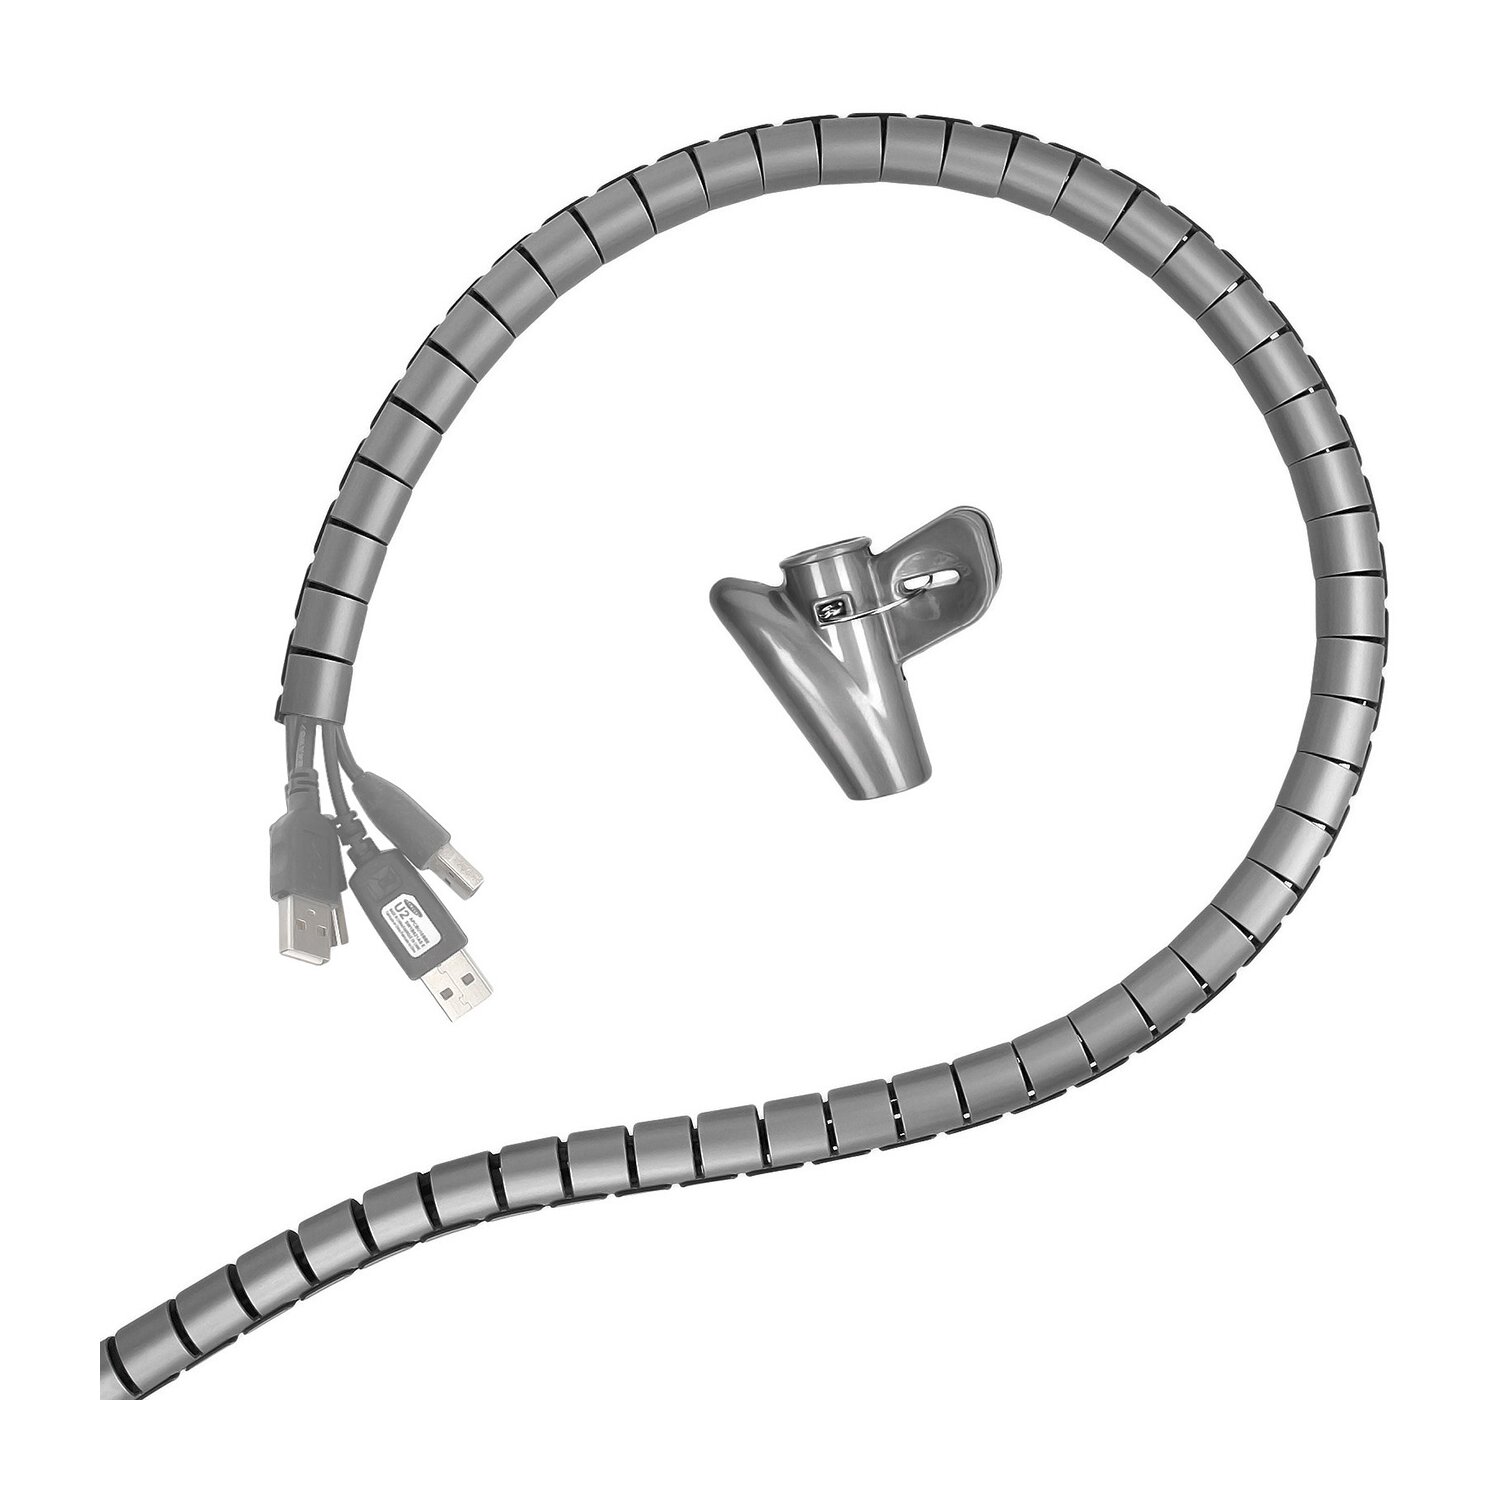 Minadax professioneller HighTech Kabelschlauch Kabelkanal in grau mit 15 mm Durchmesser für flexibles Kabelmanagement an Computer und Arbeitsplatz